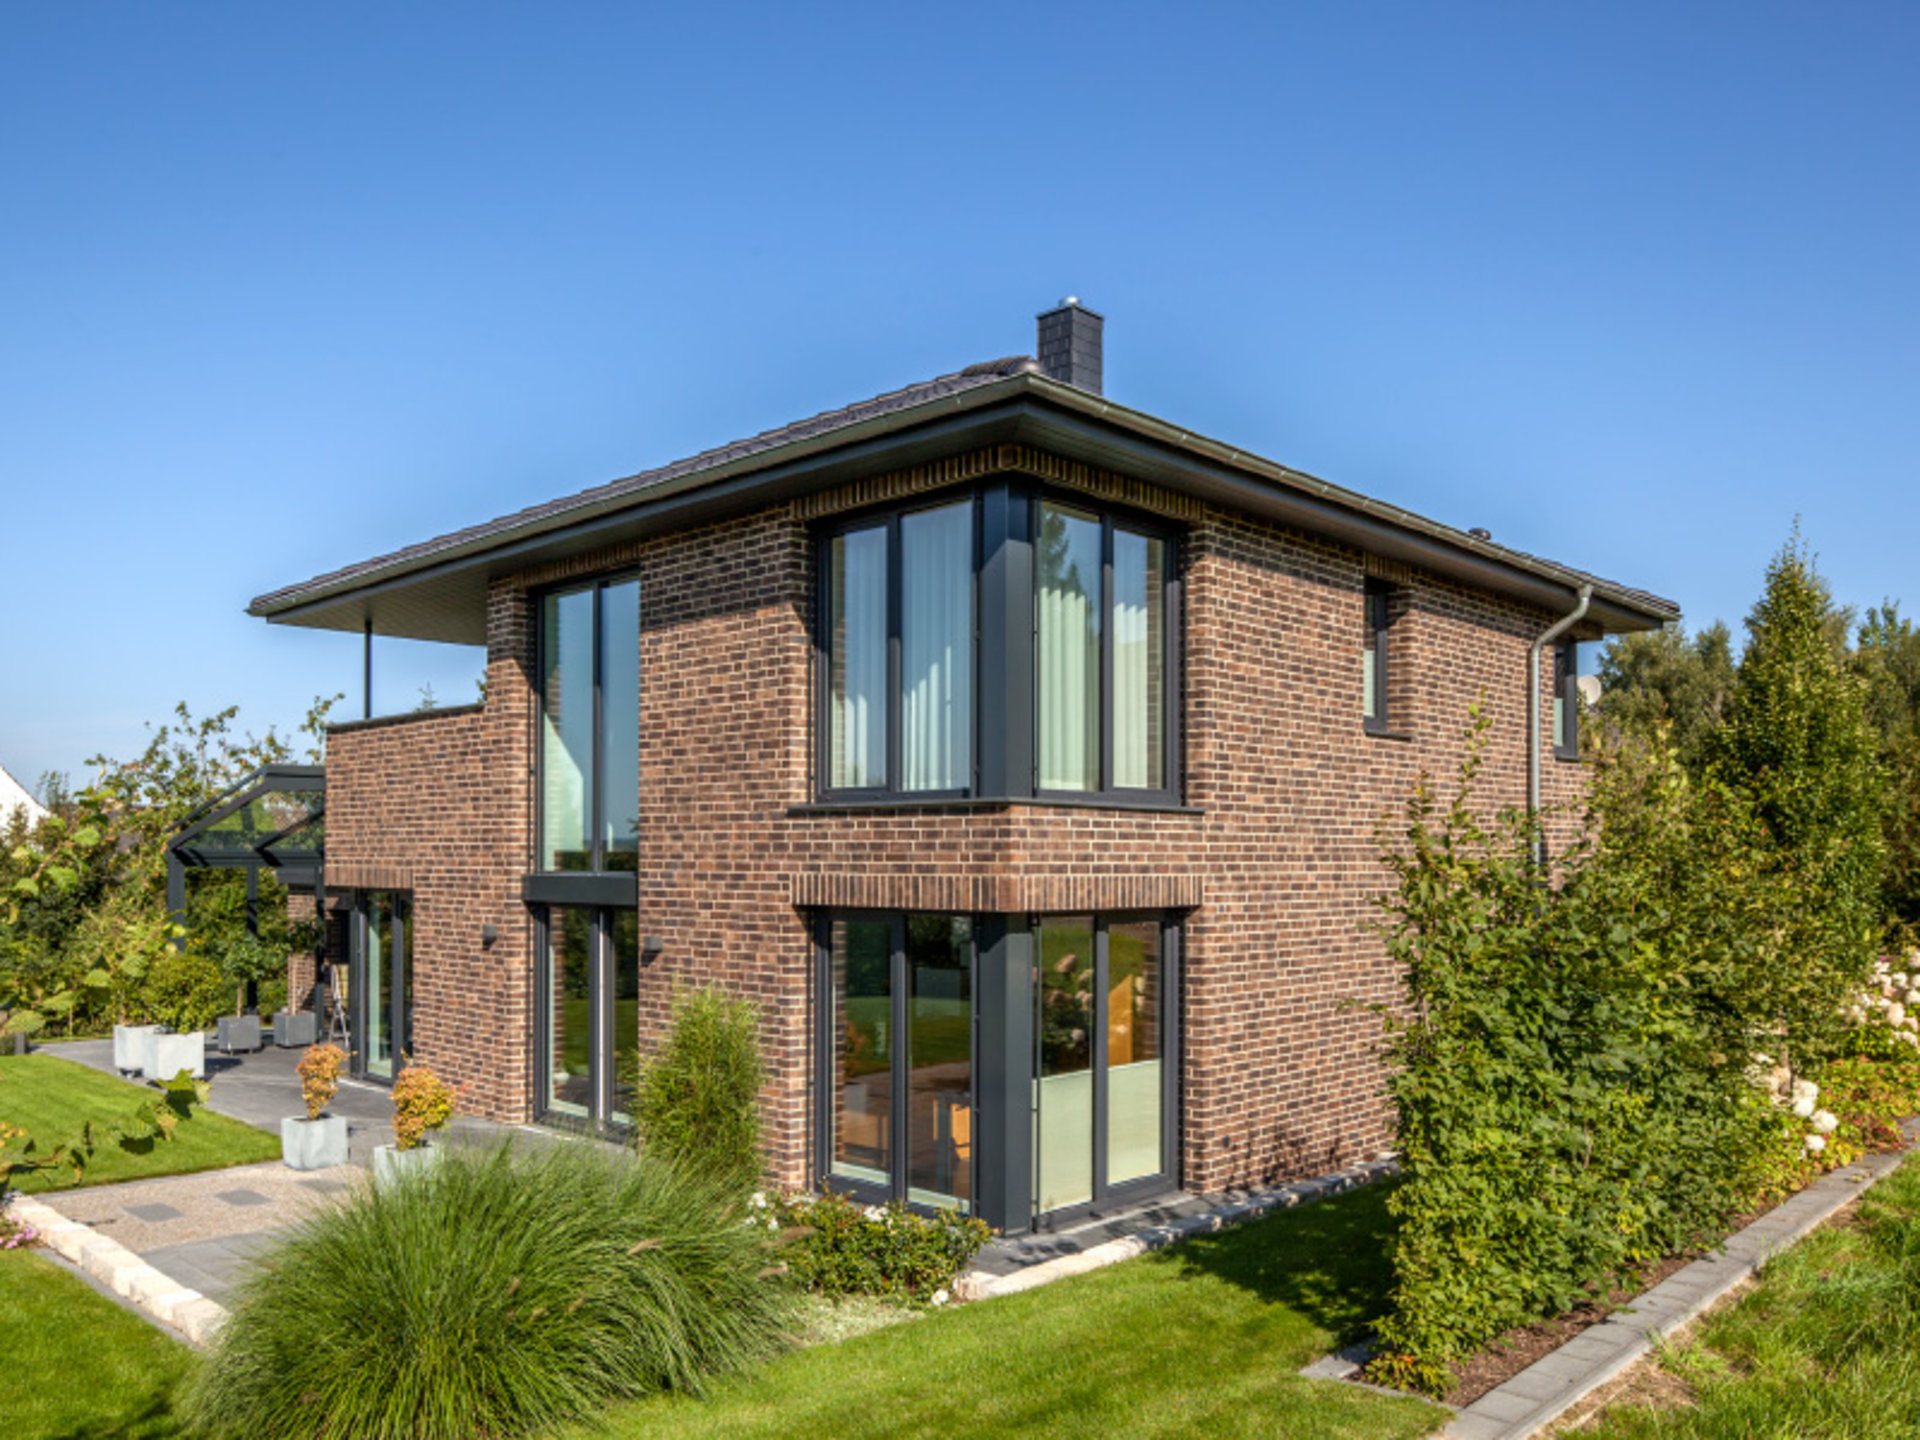 Haus Jessen präsentiert einen Klinkerbau auf eine ganz neue, moderne Art und Weise in Erdtönen. (Foto: BAUMEISTER-HAUS)